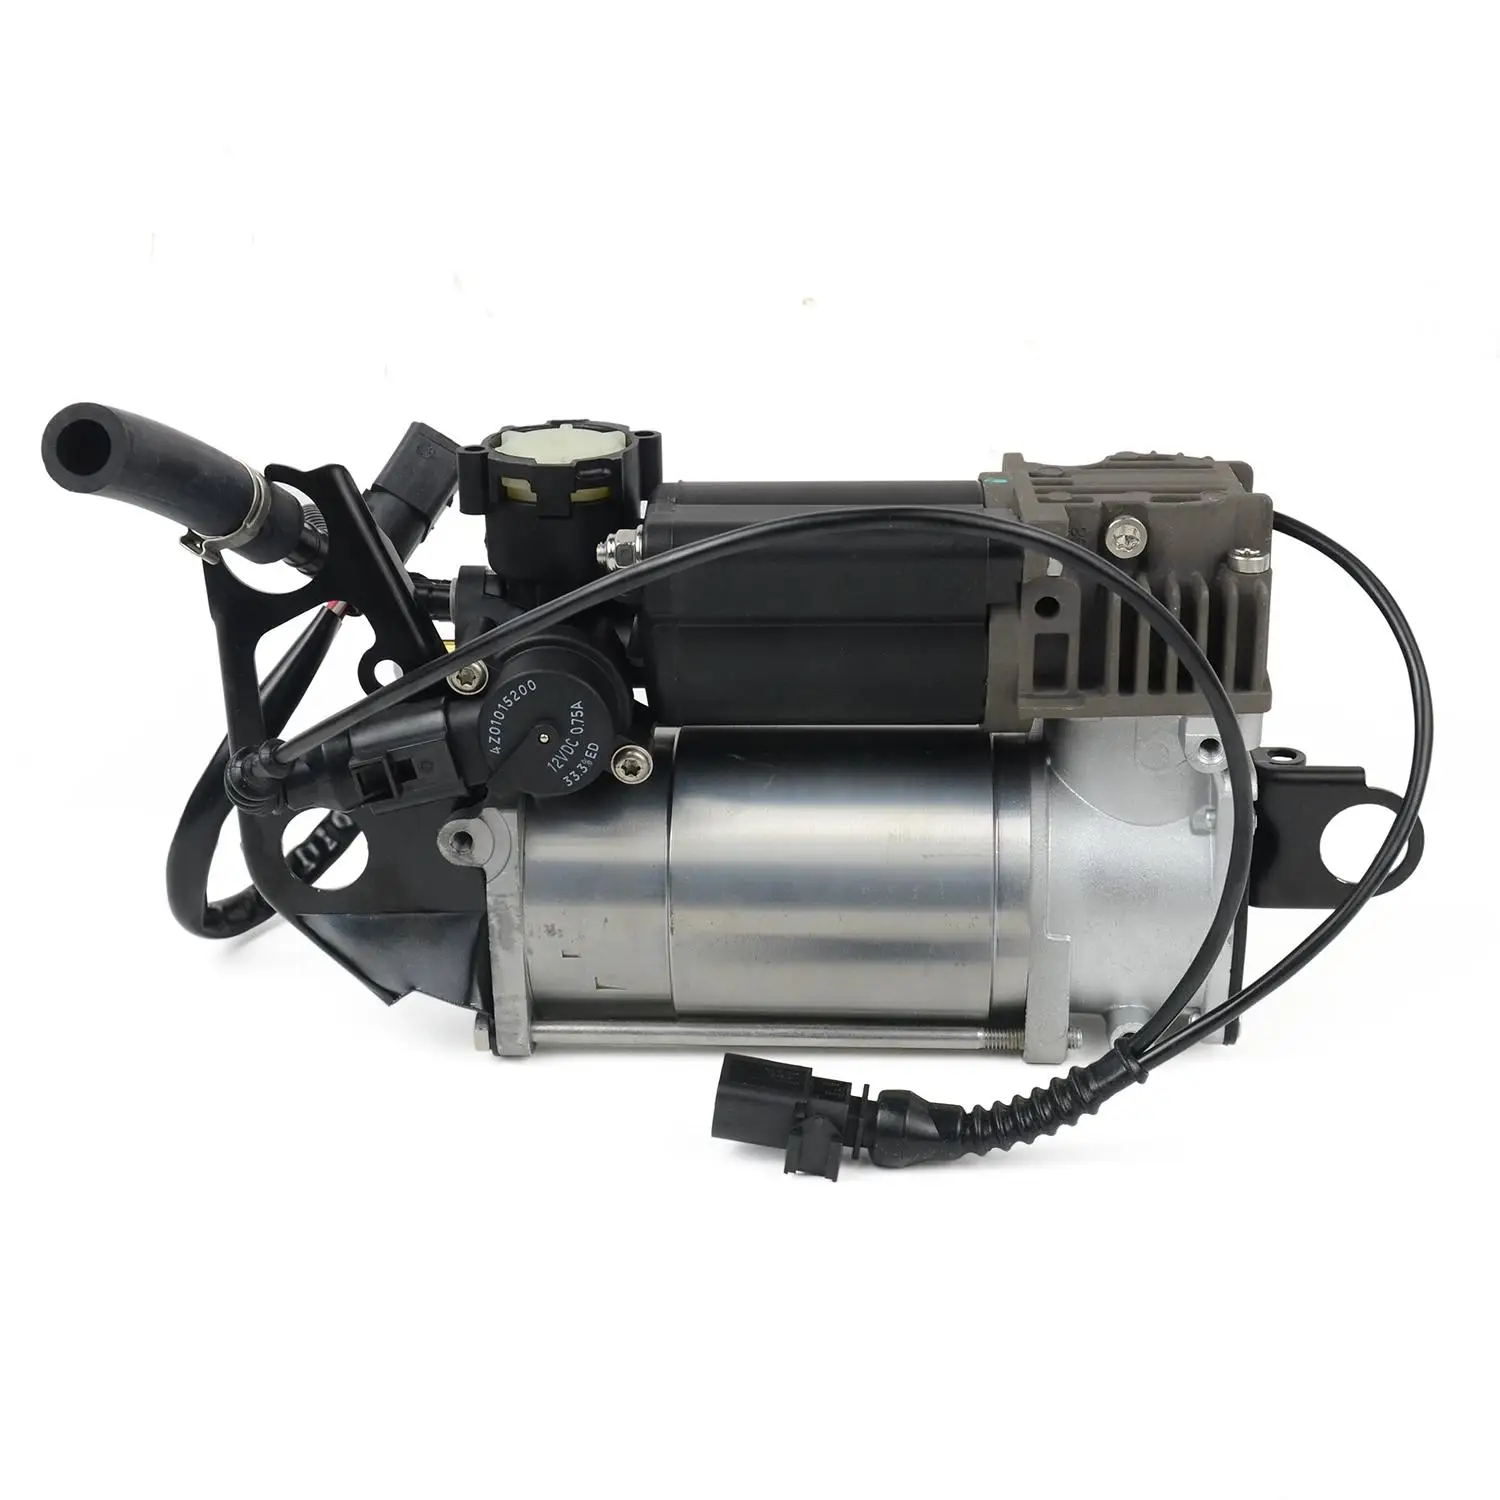 

AP01 Air Suspension Compressor Pump for Audi Q7 Porsche Cayenne VW Touareg 3.0L V6 7L8616006A 4154033050 7L8616007F